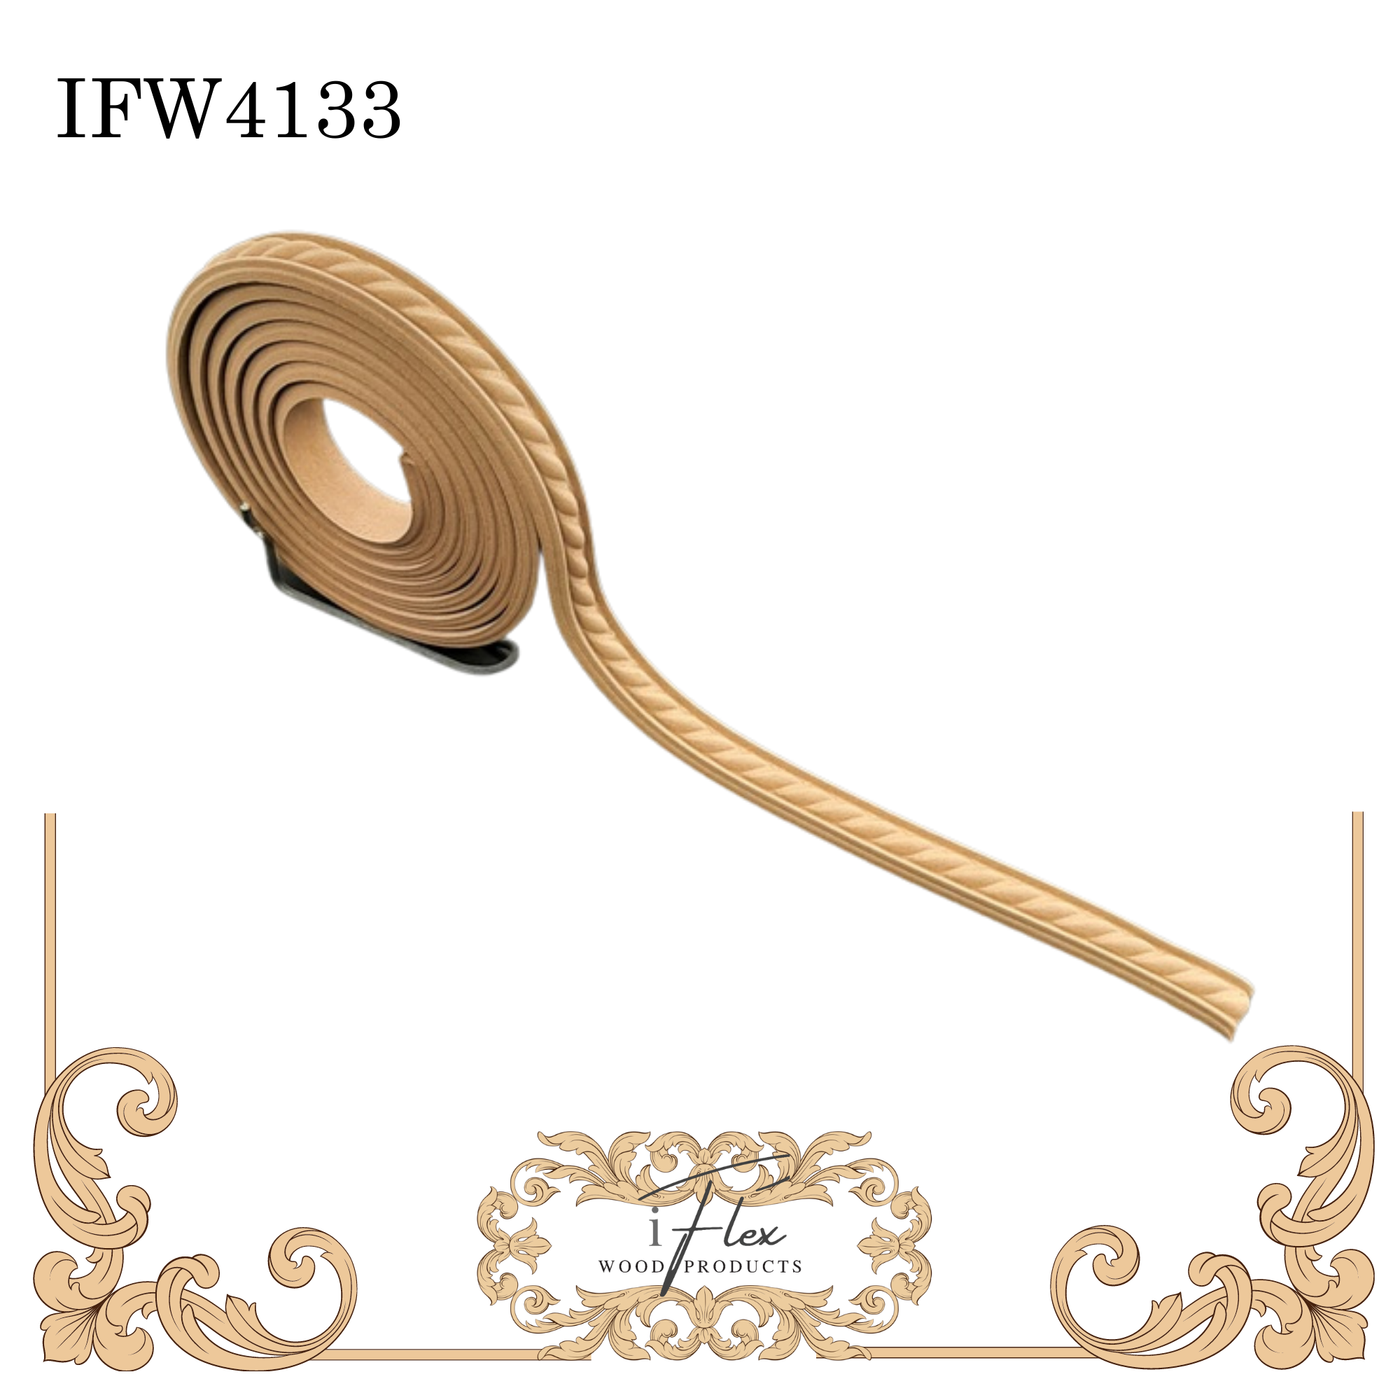 IFW 4133